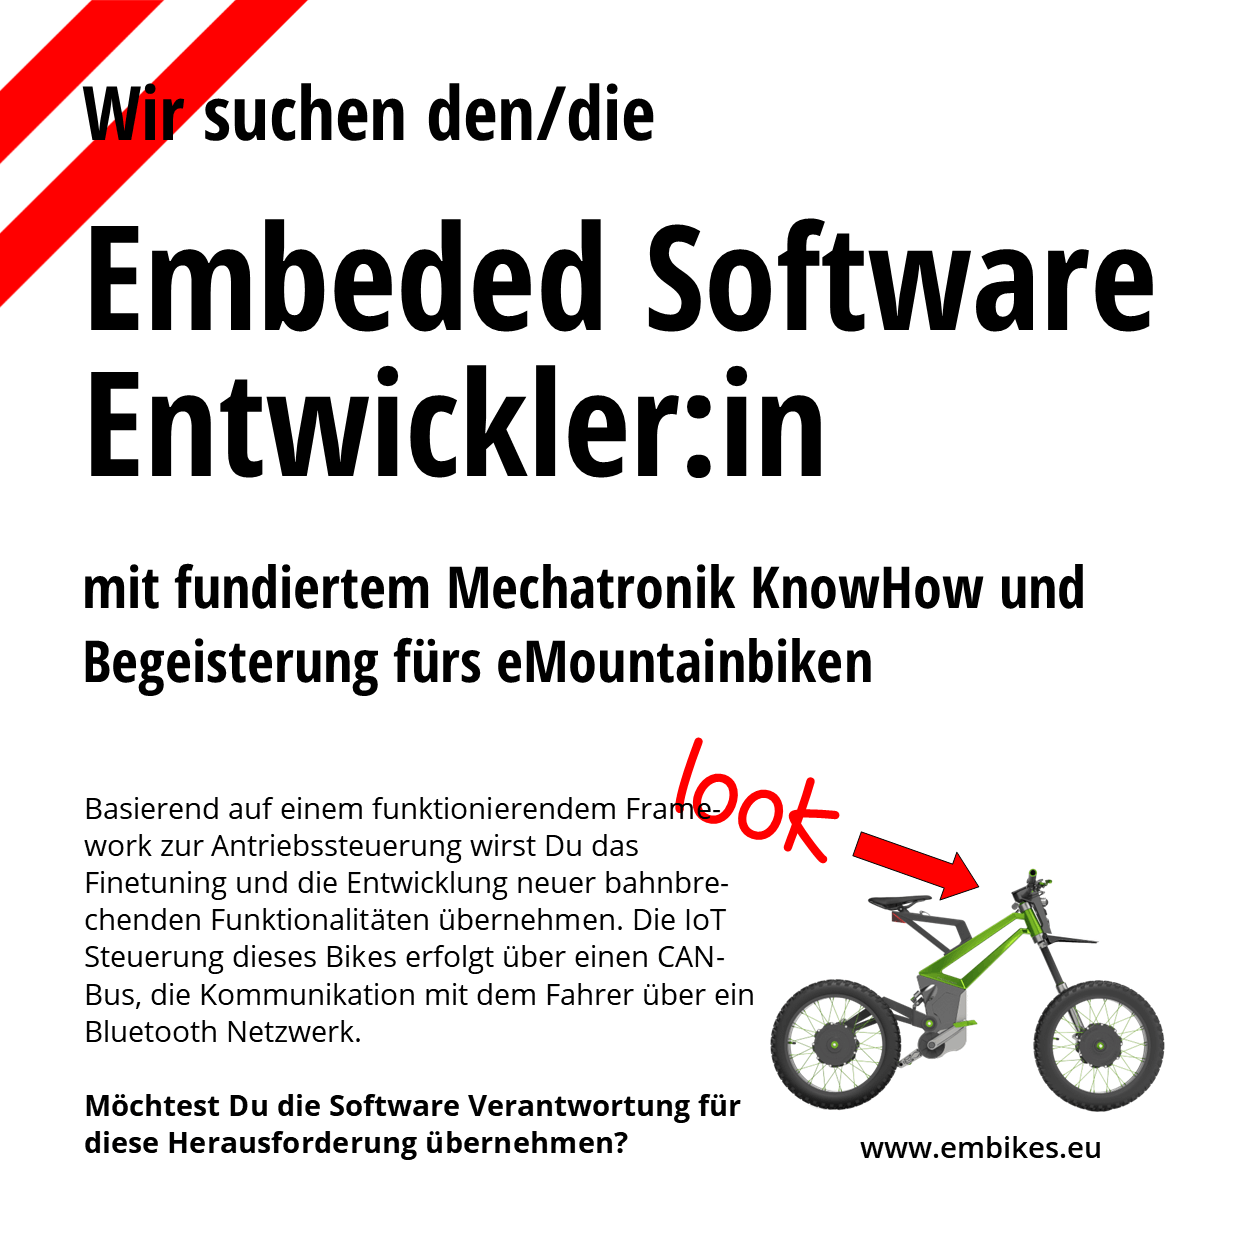 embeded Software Entwickler